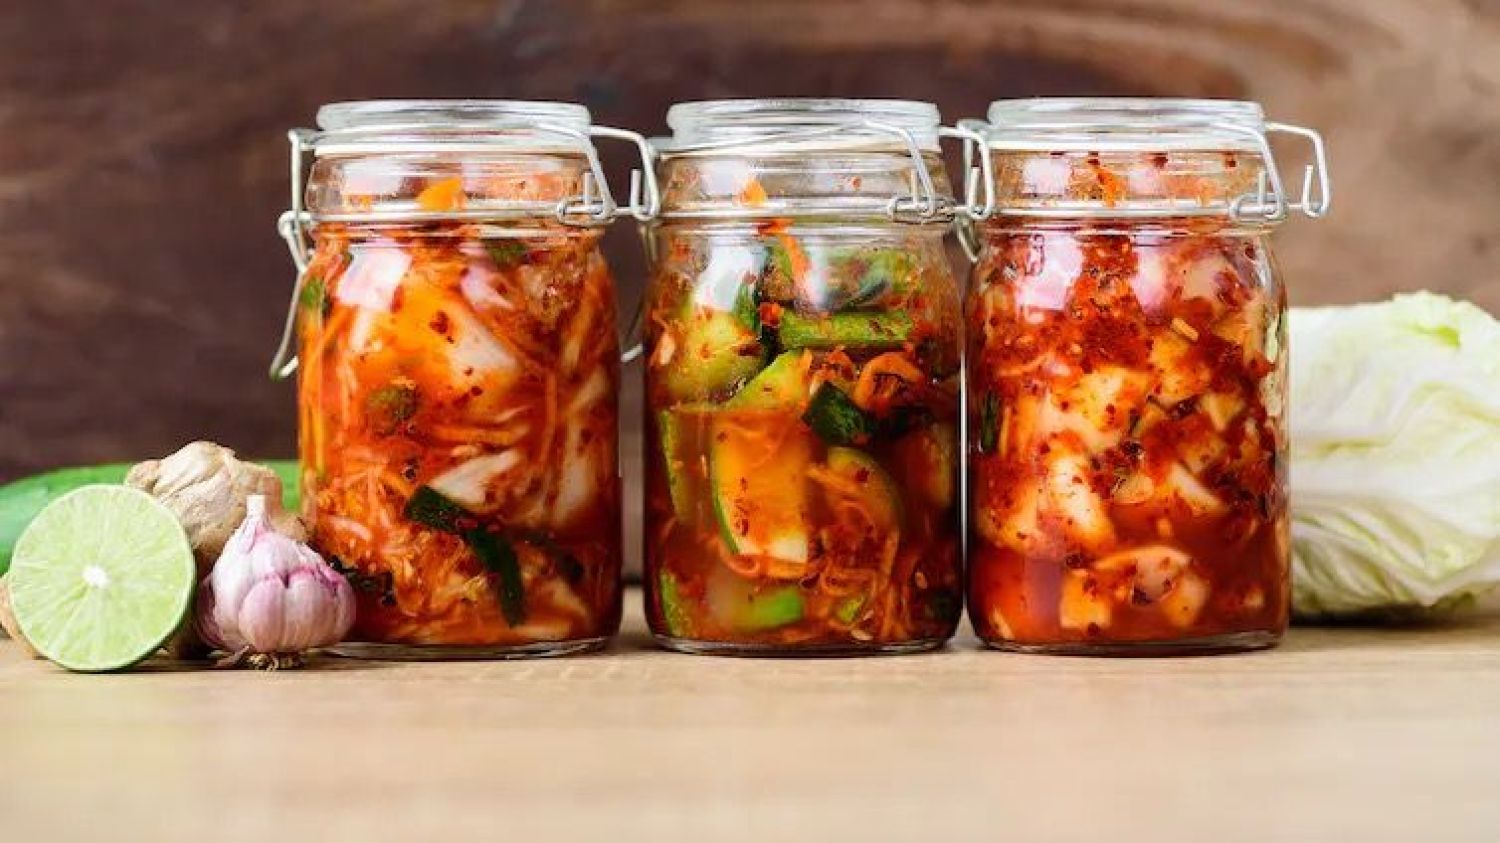 Alimentos como el kimchi son excelentes para incluir en una dieta psicobiótica. Nungning20 / Shutterstock